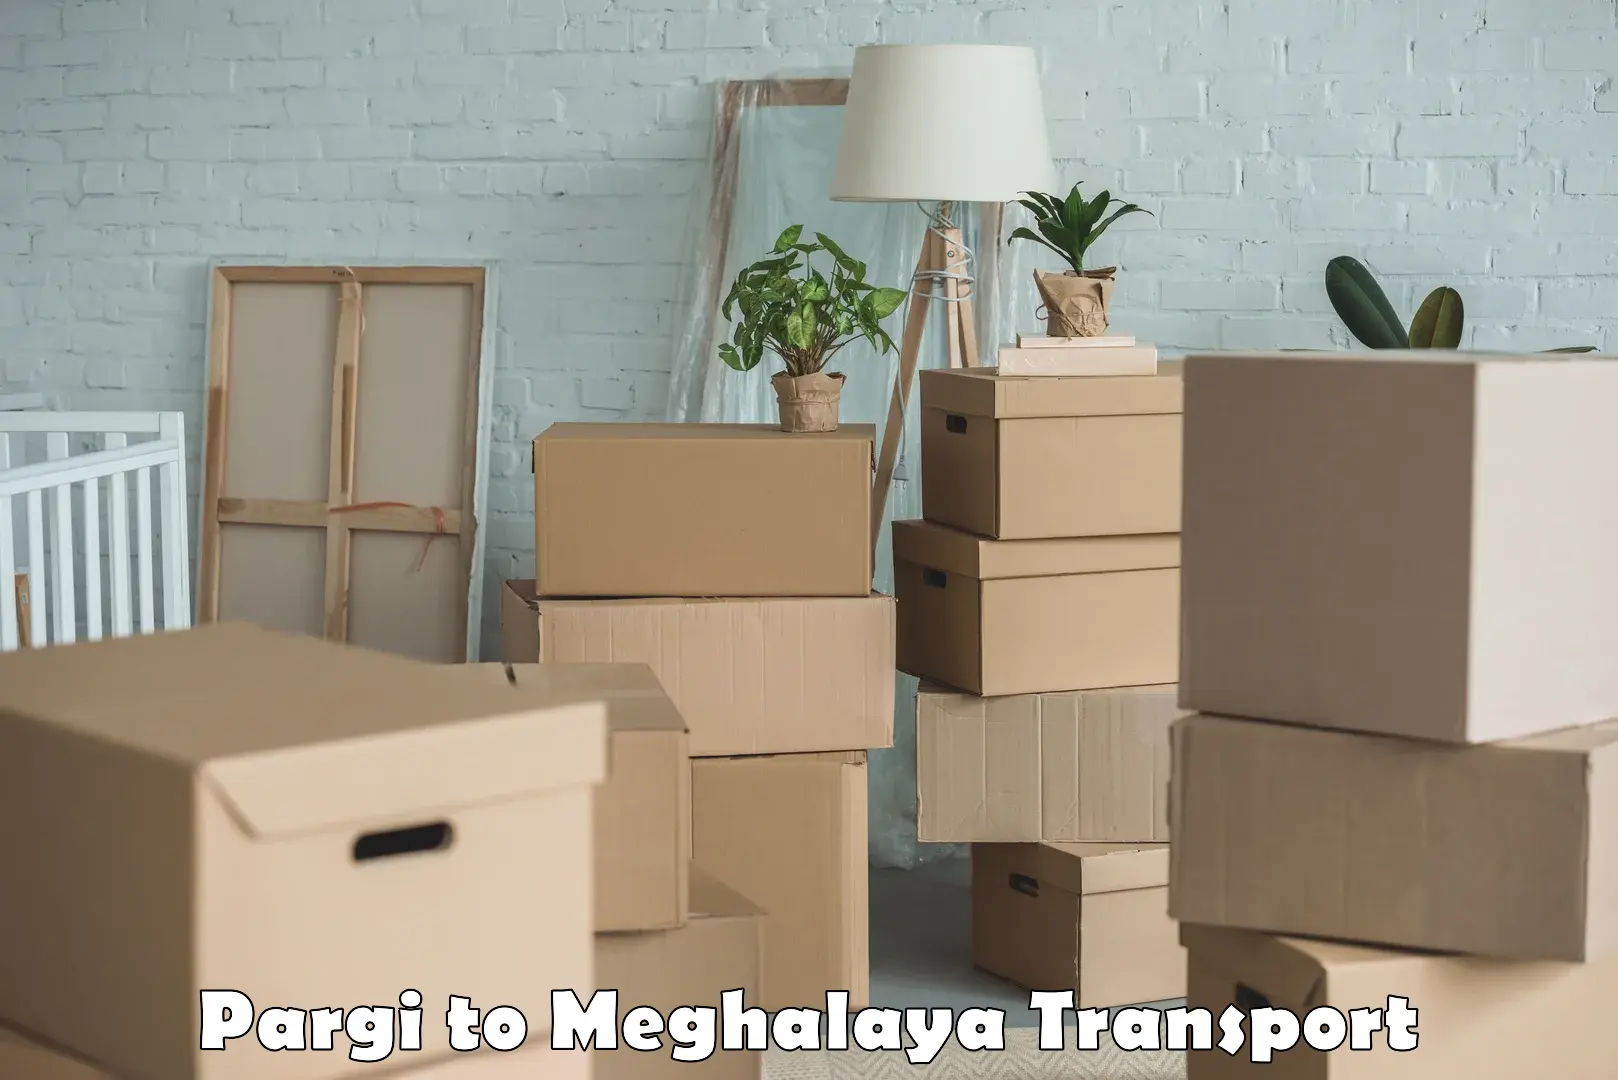 Transport in sharing Pargi to Meghalaya